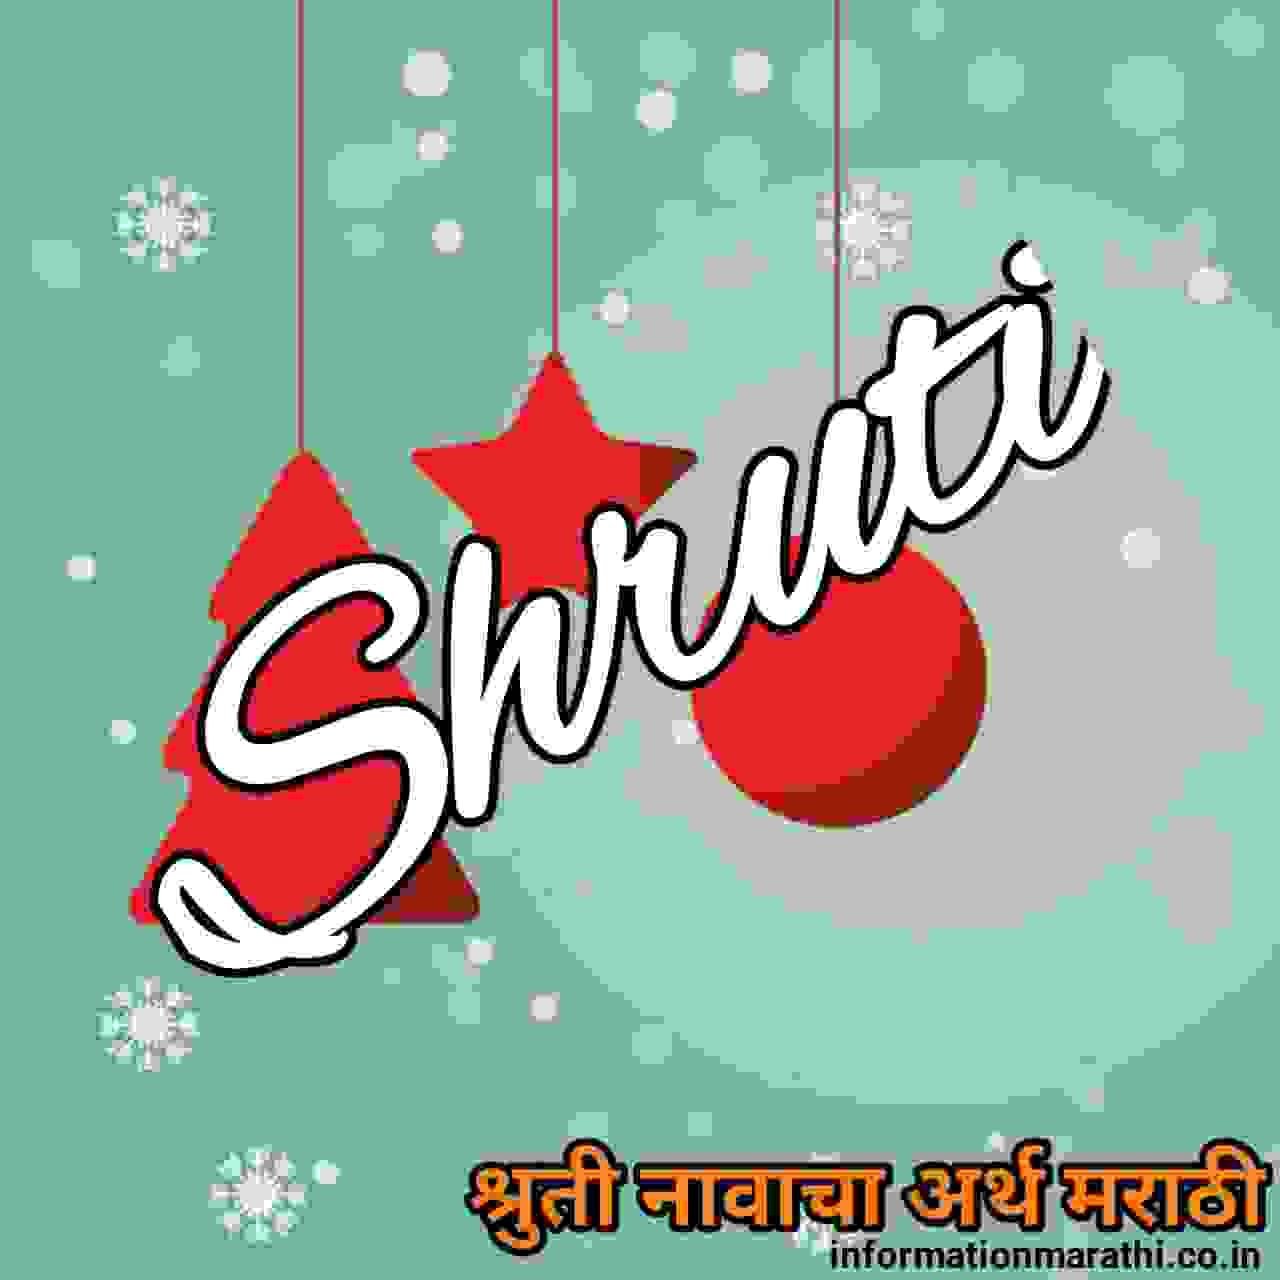 श्रुती नावाचा अर्थ मराठीमध्ये | Shruti Name Meaning in Marathi